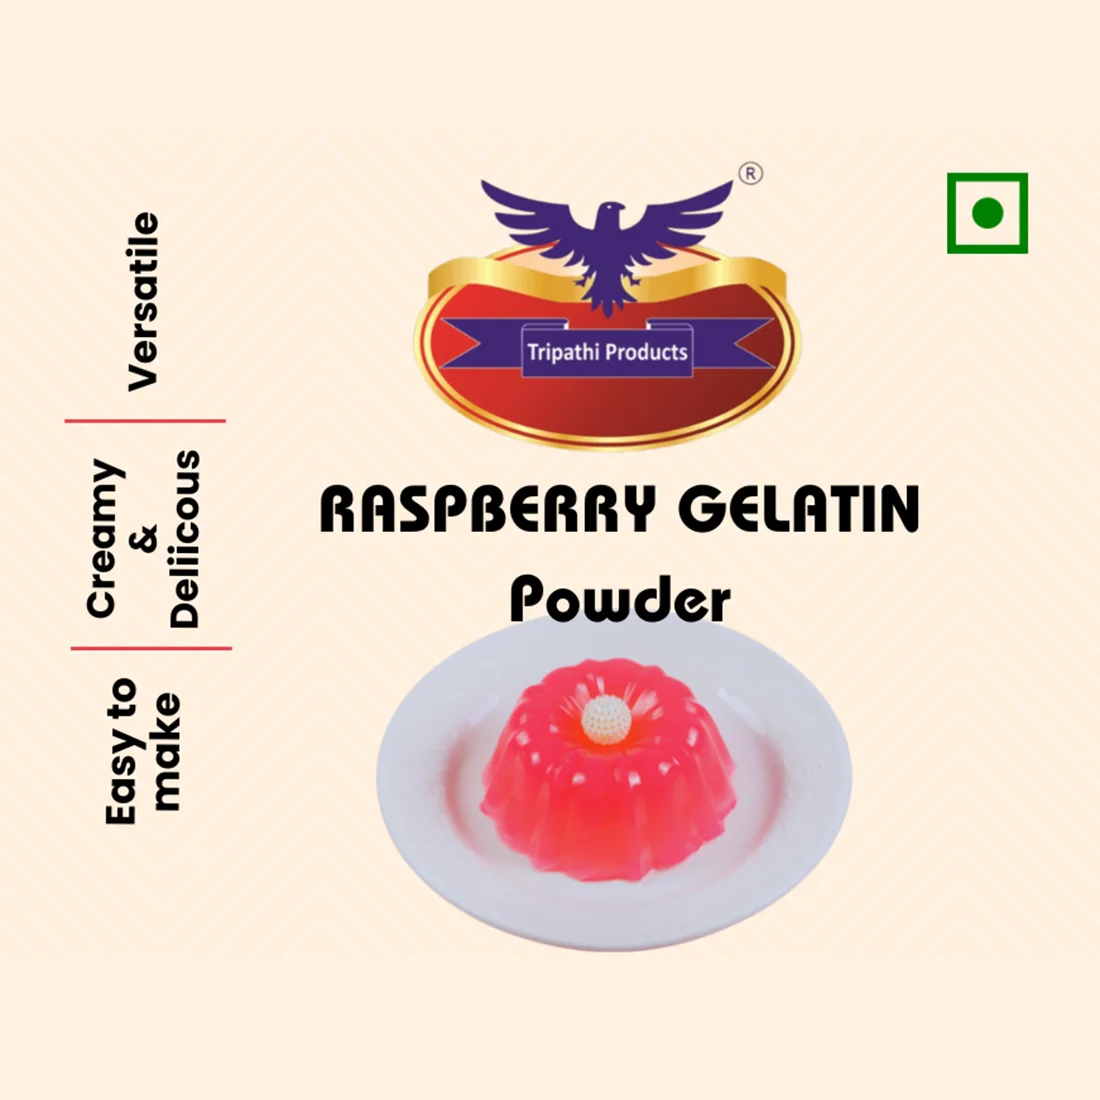 Raspberry flavoured Gelatin Powder